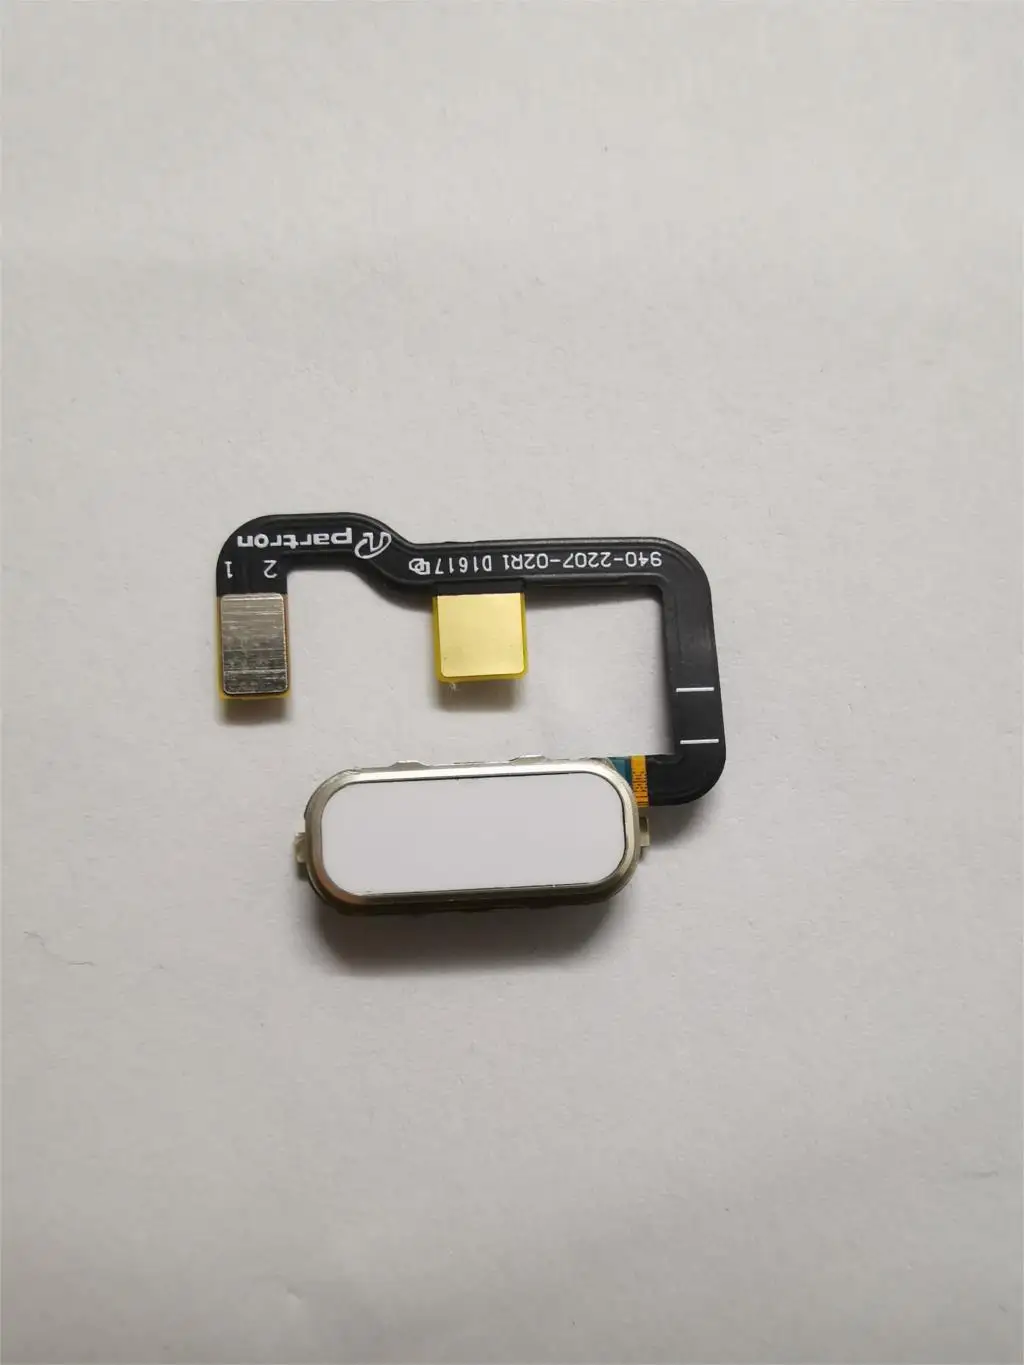 Gumb Za Domačo Stran Prstnih Senzor Flex Kabel Za Asus Zenfone 3 Ultra Zu680kl Meni Se Dotaknite Tipke 